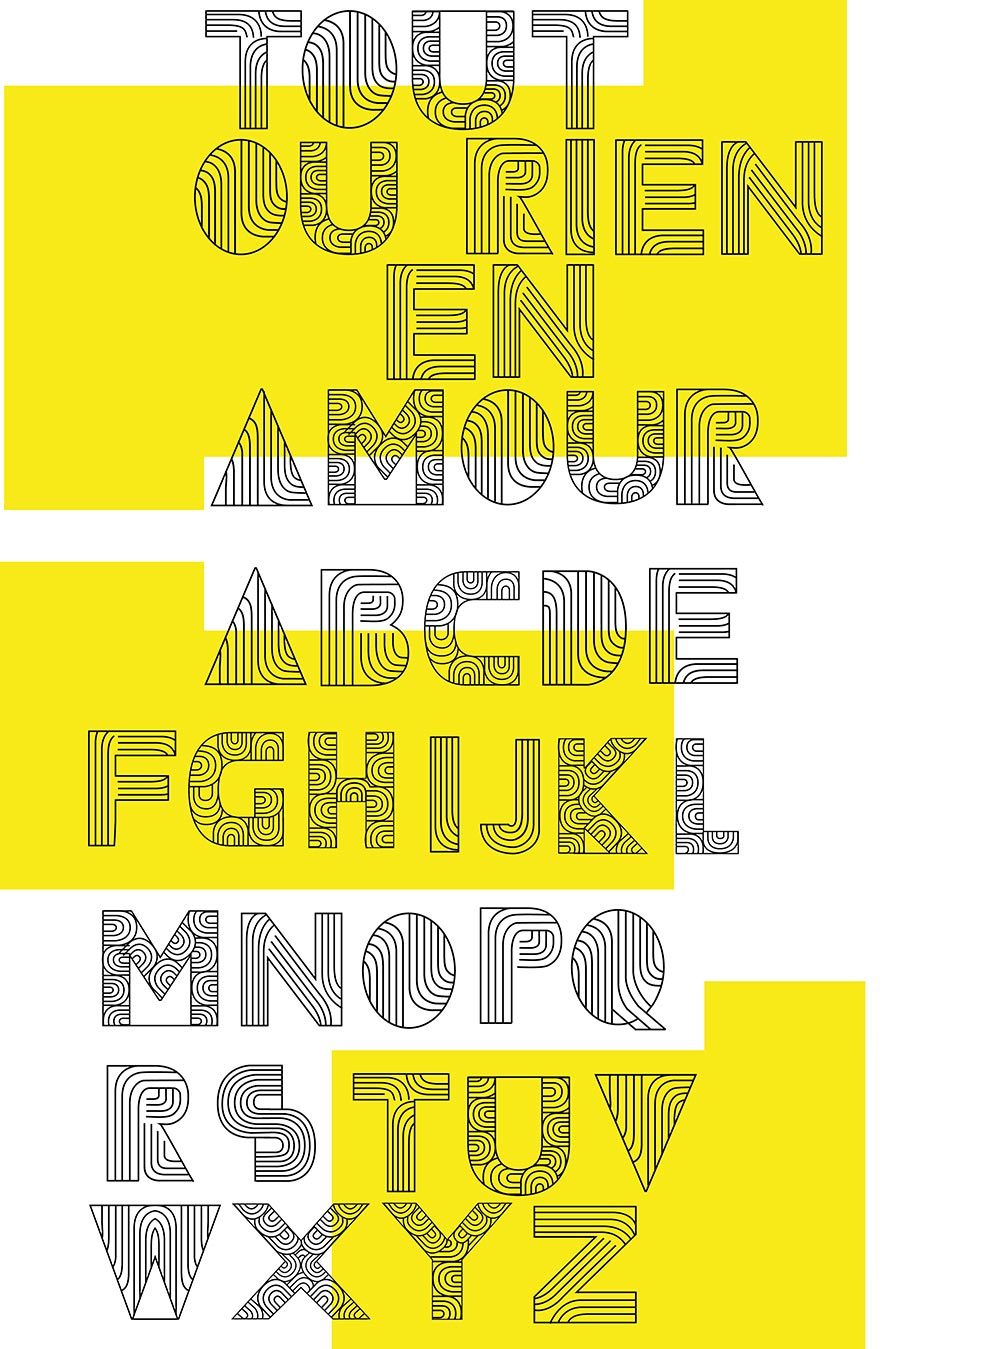 Création de typographie